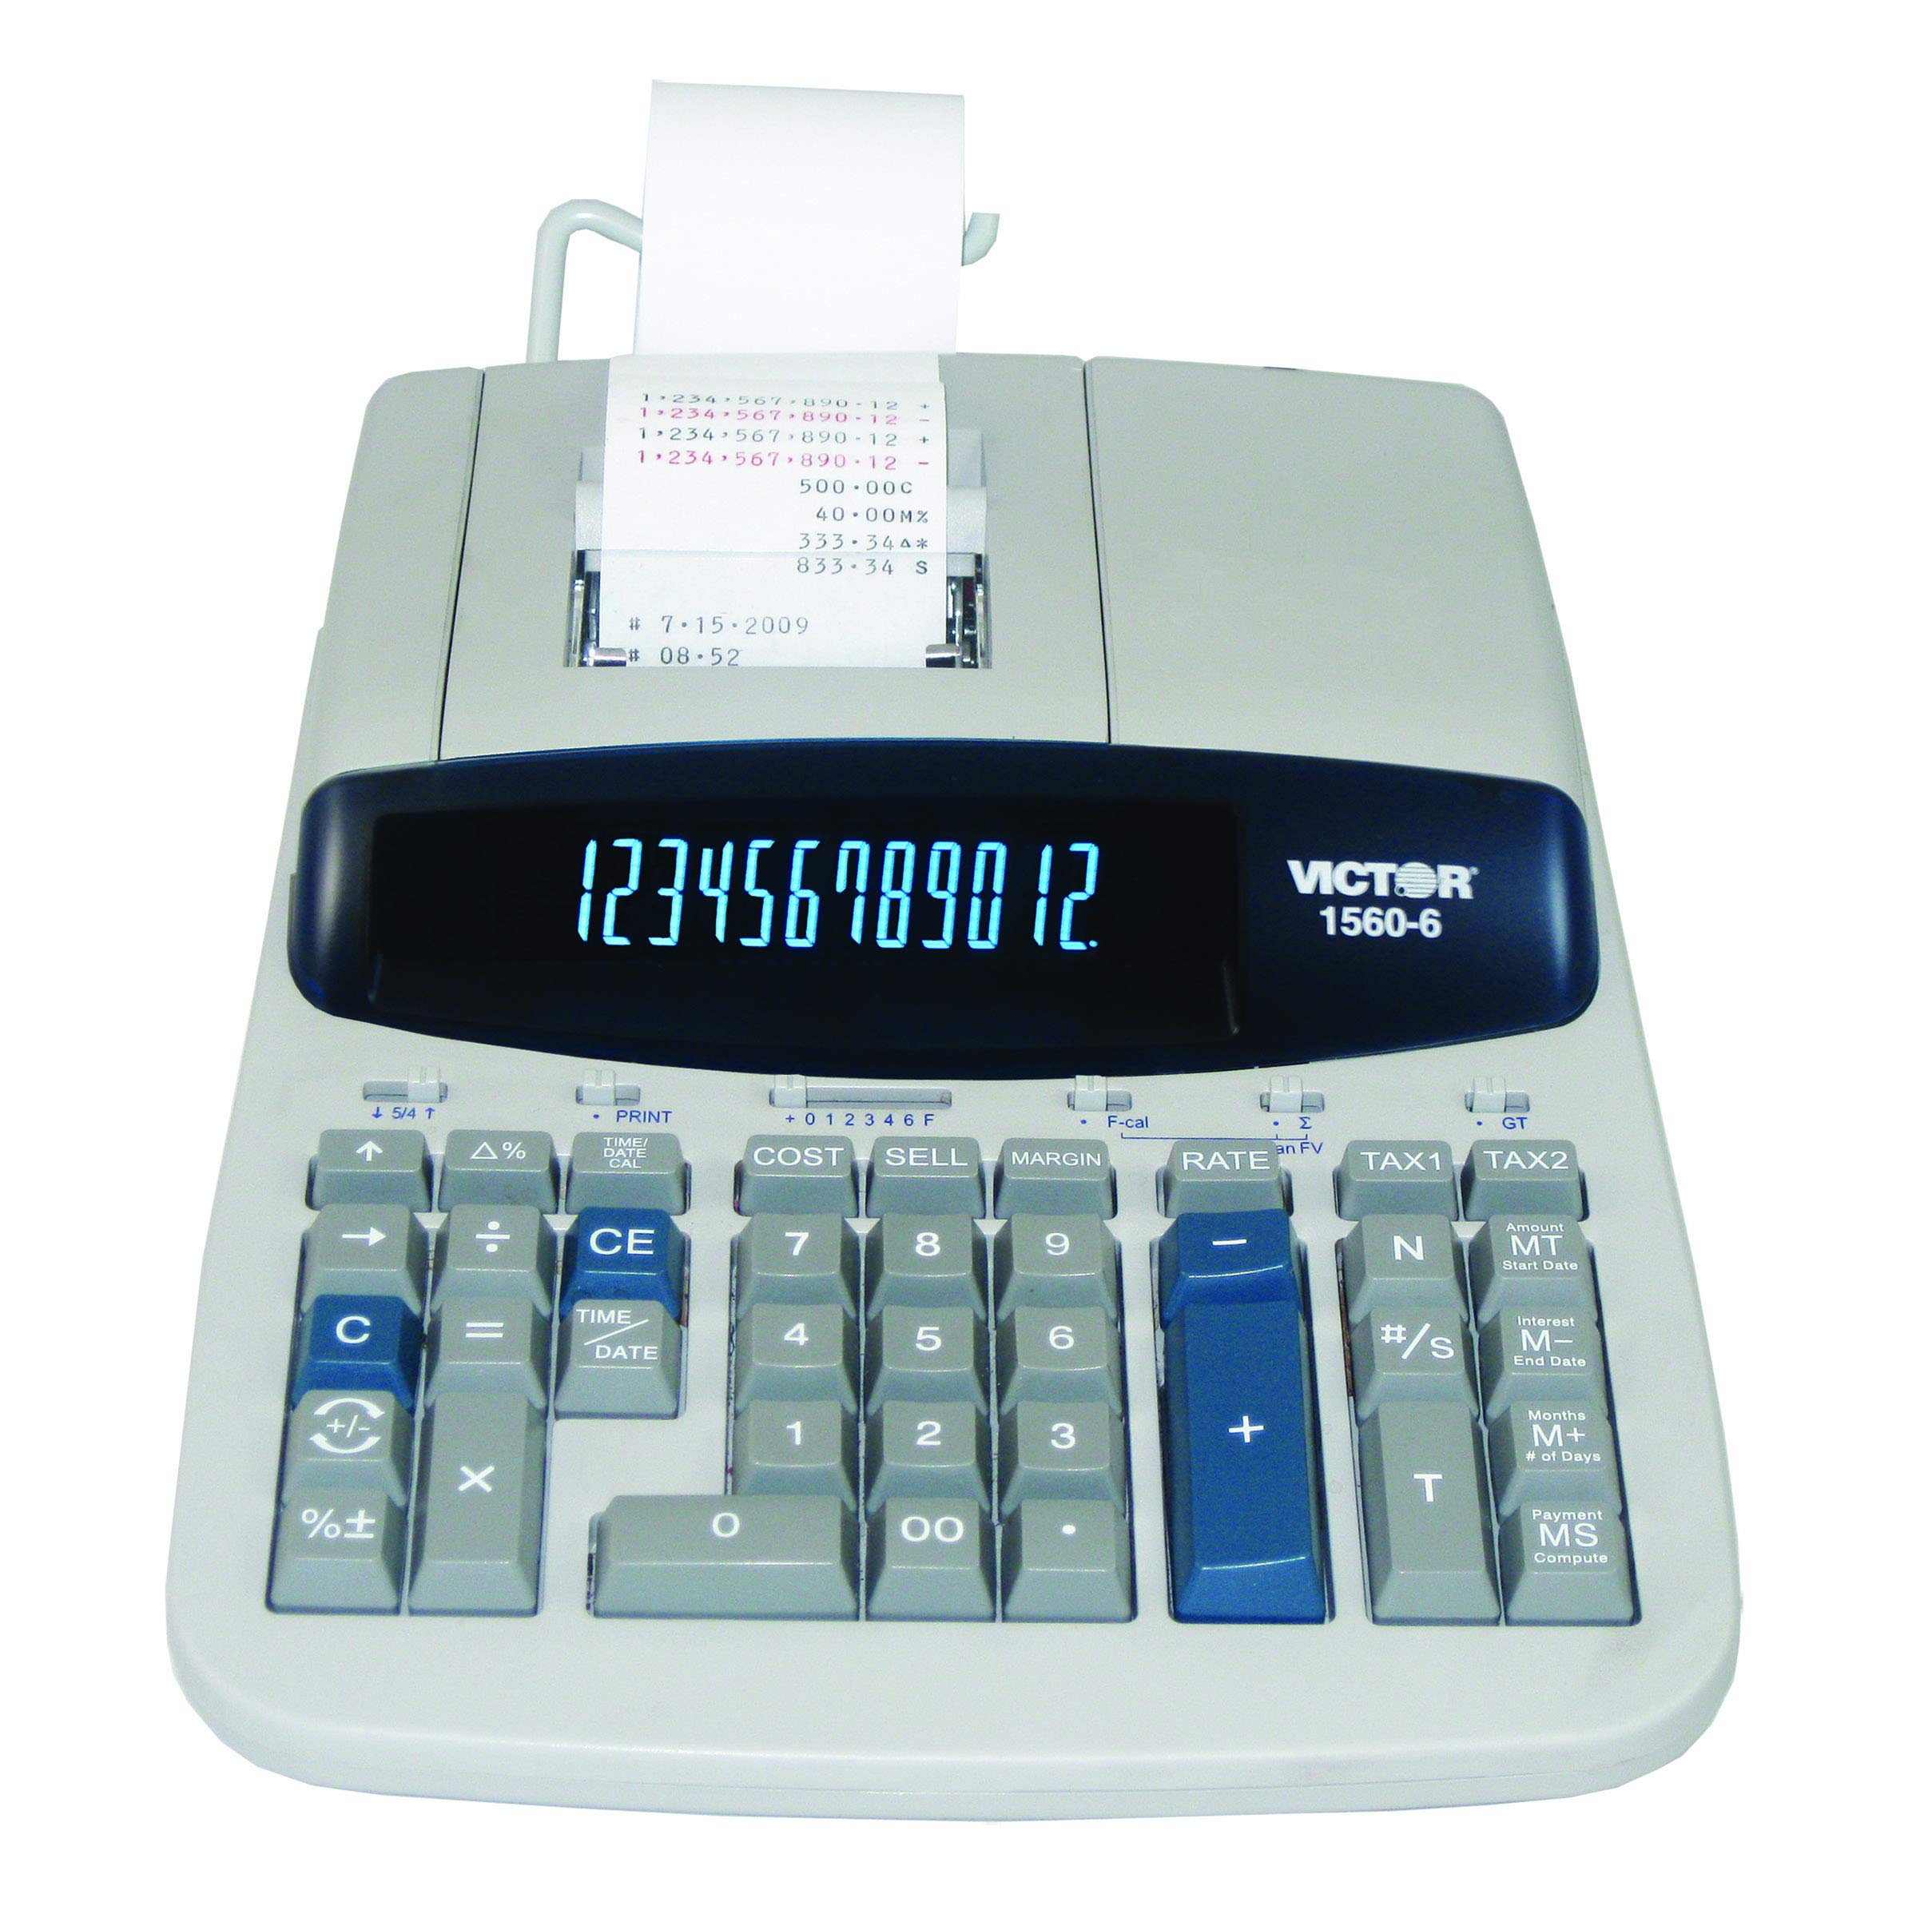 Victor 1560-6 Calculadora de impresión comercial de alta resistencia de 12 dígitos con pantalla grande y asistente de préstamo